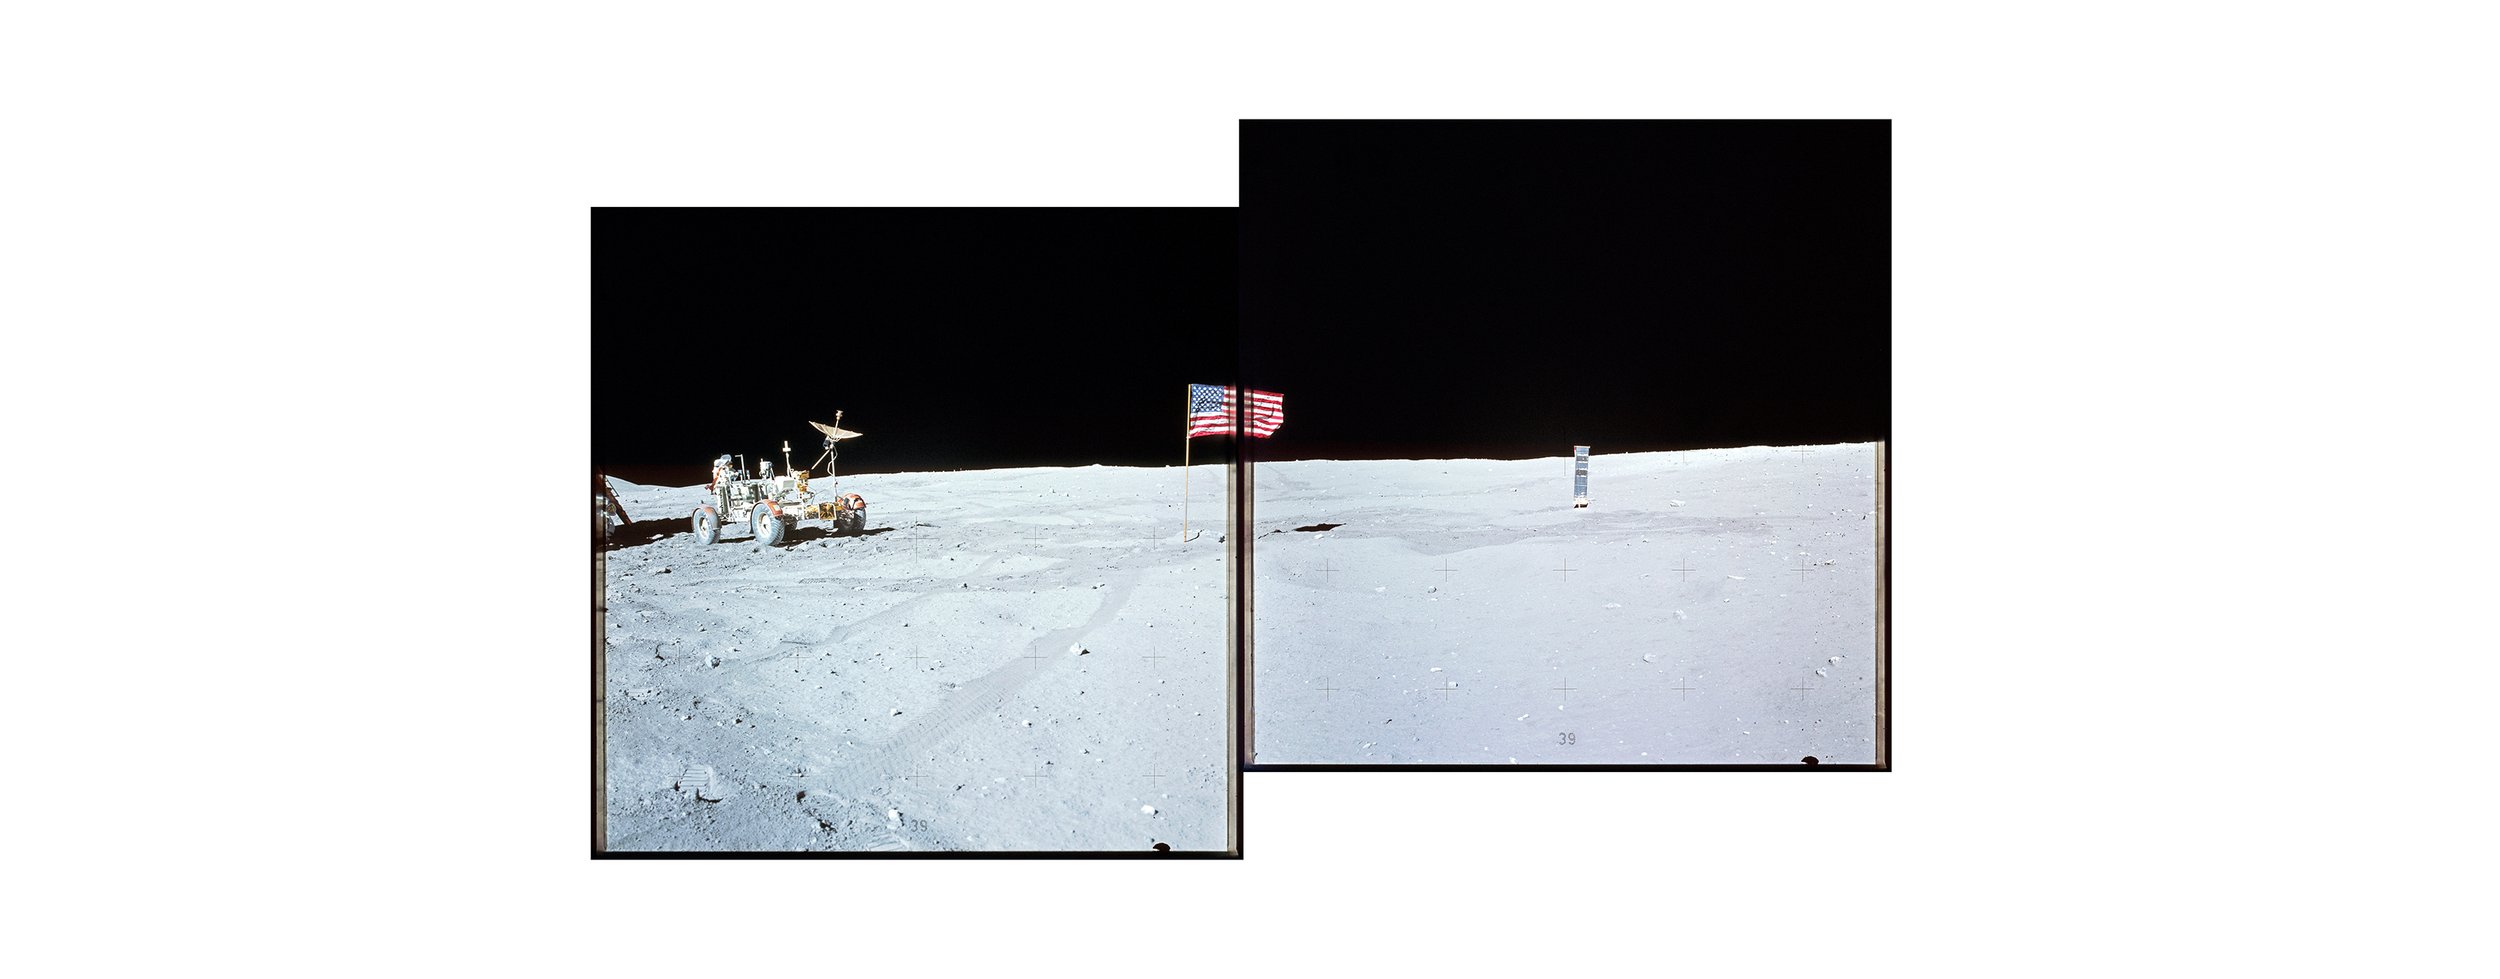  Descartes crater, LRV (Lunar Roving Vehicle) and the American flag (100x60)Apollo 16 Magazine 107/C - NASA photographs 1972 